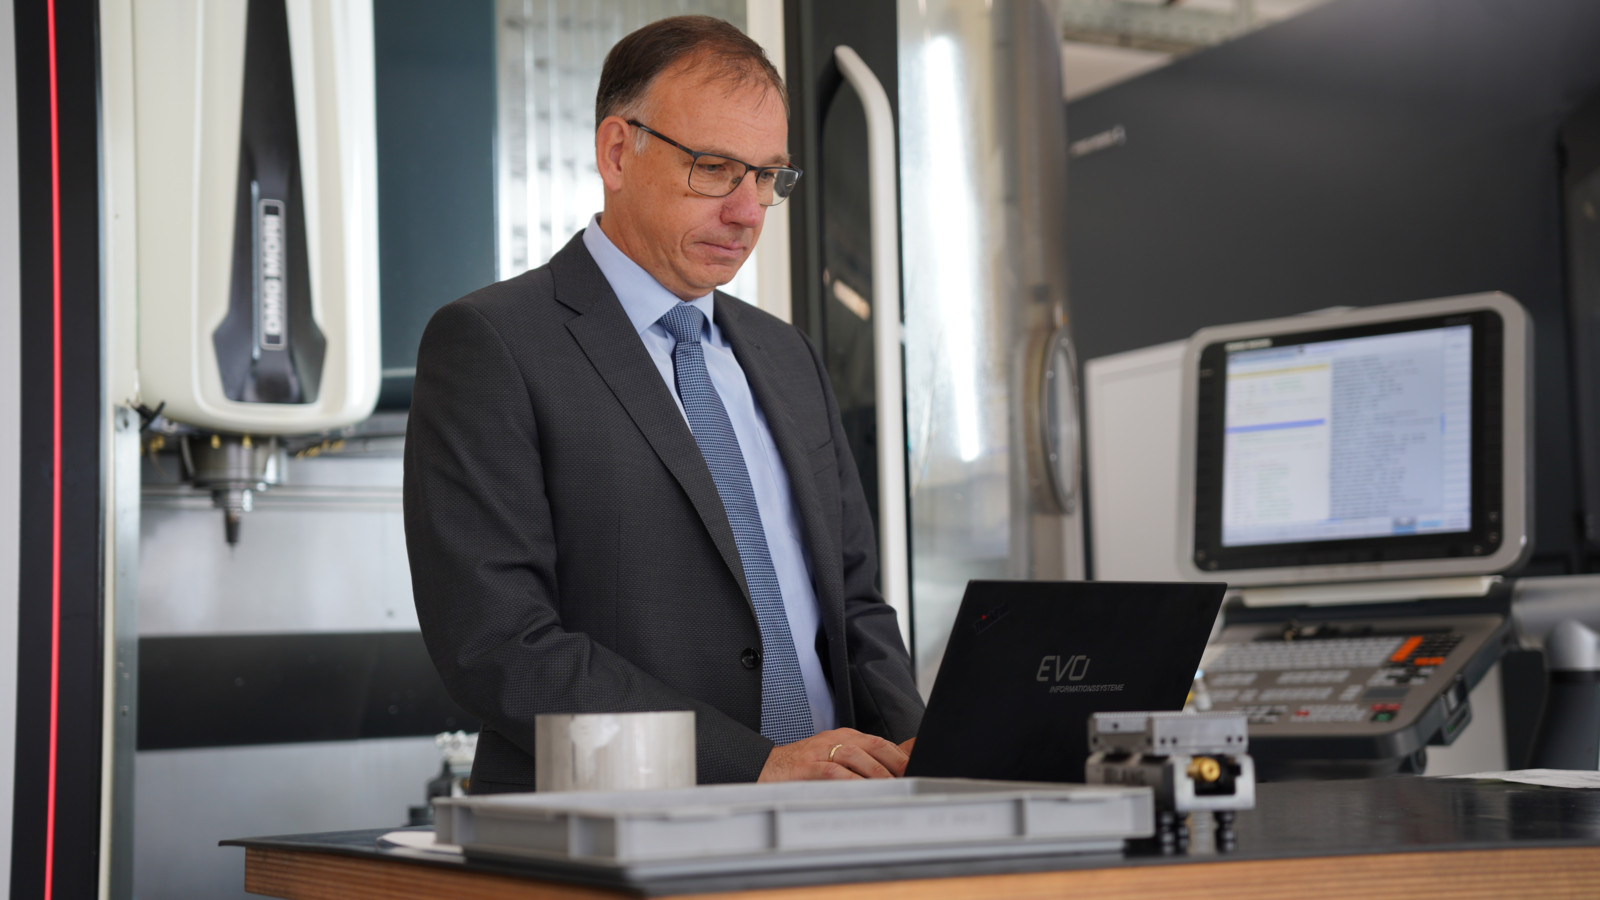 EVO-Gründer Jürgen Widmann: „Für die Zukunft planen wir stärker denn je die Automatisierung von Prozessen, autonome Steuerungen der Produktion und Kommunikation mit Robotern.“